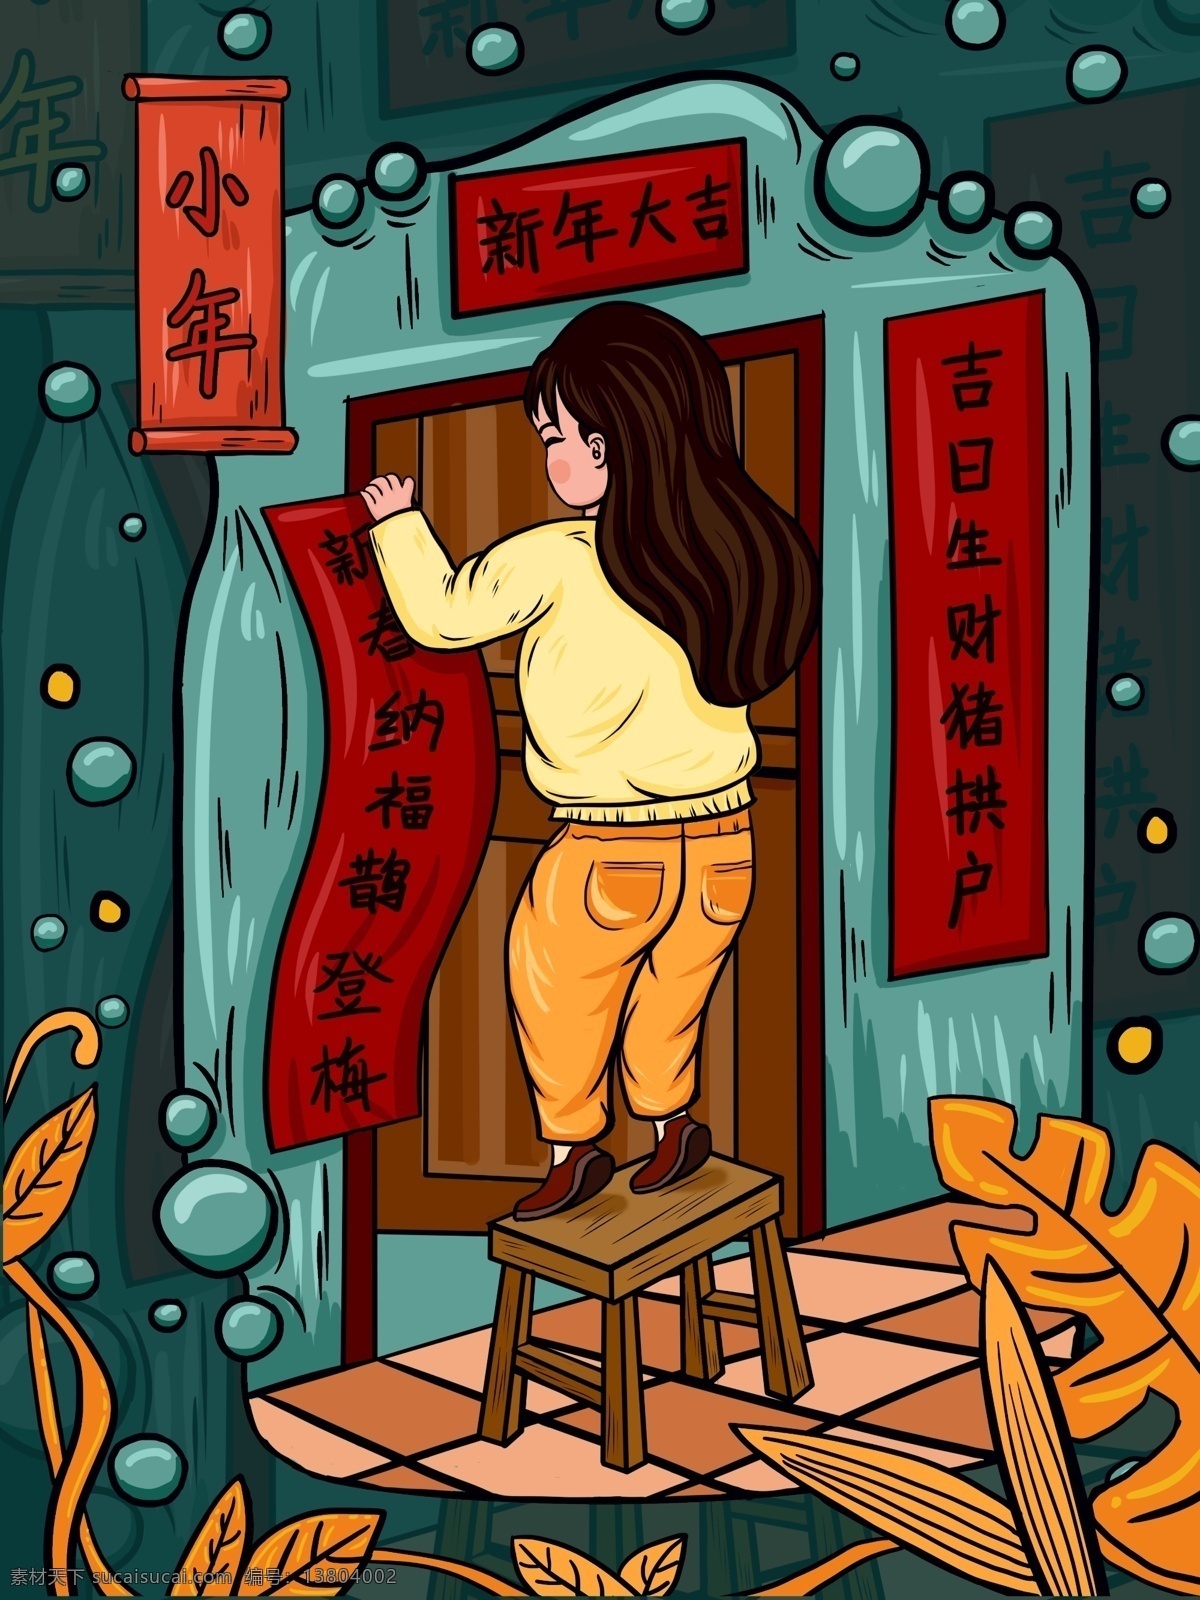 小年 贴 春联 潮 漫 卡通 中国 风 插画 中国风 贴春联 女孩 潮漫卡通 微信用图 手机用图